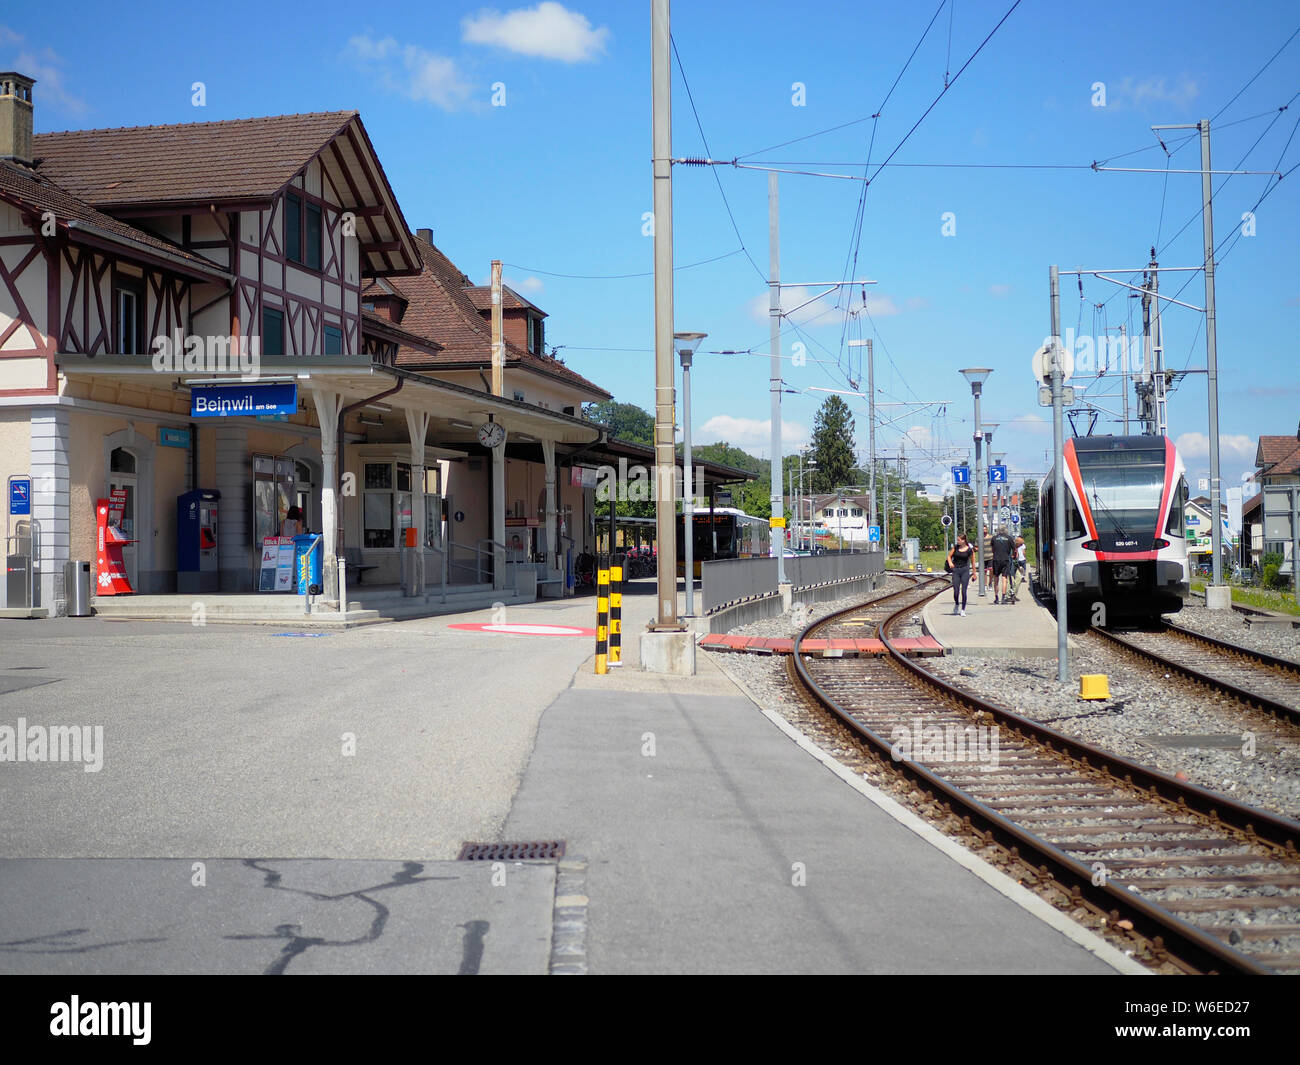 Bahnhof in Beinwil am See, Kanton Aargau, Schweiz, Europa Stock Photo